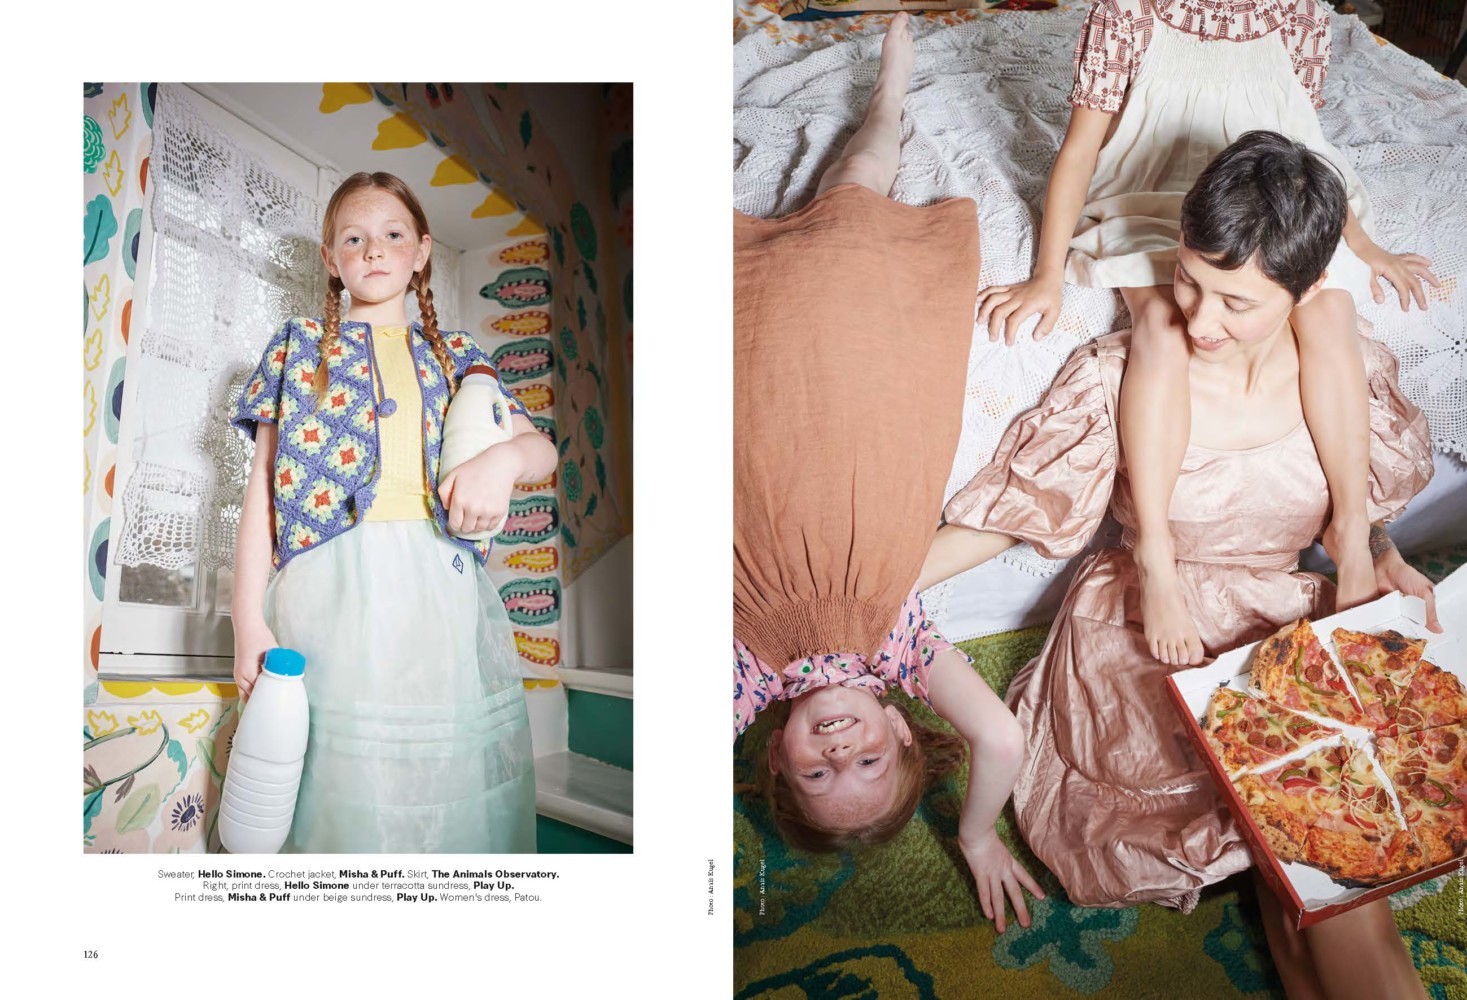 Anaïs Kugel <br>Milk magazine <br>In Wonderland